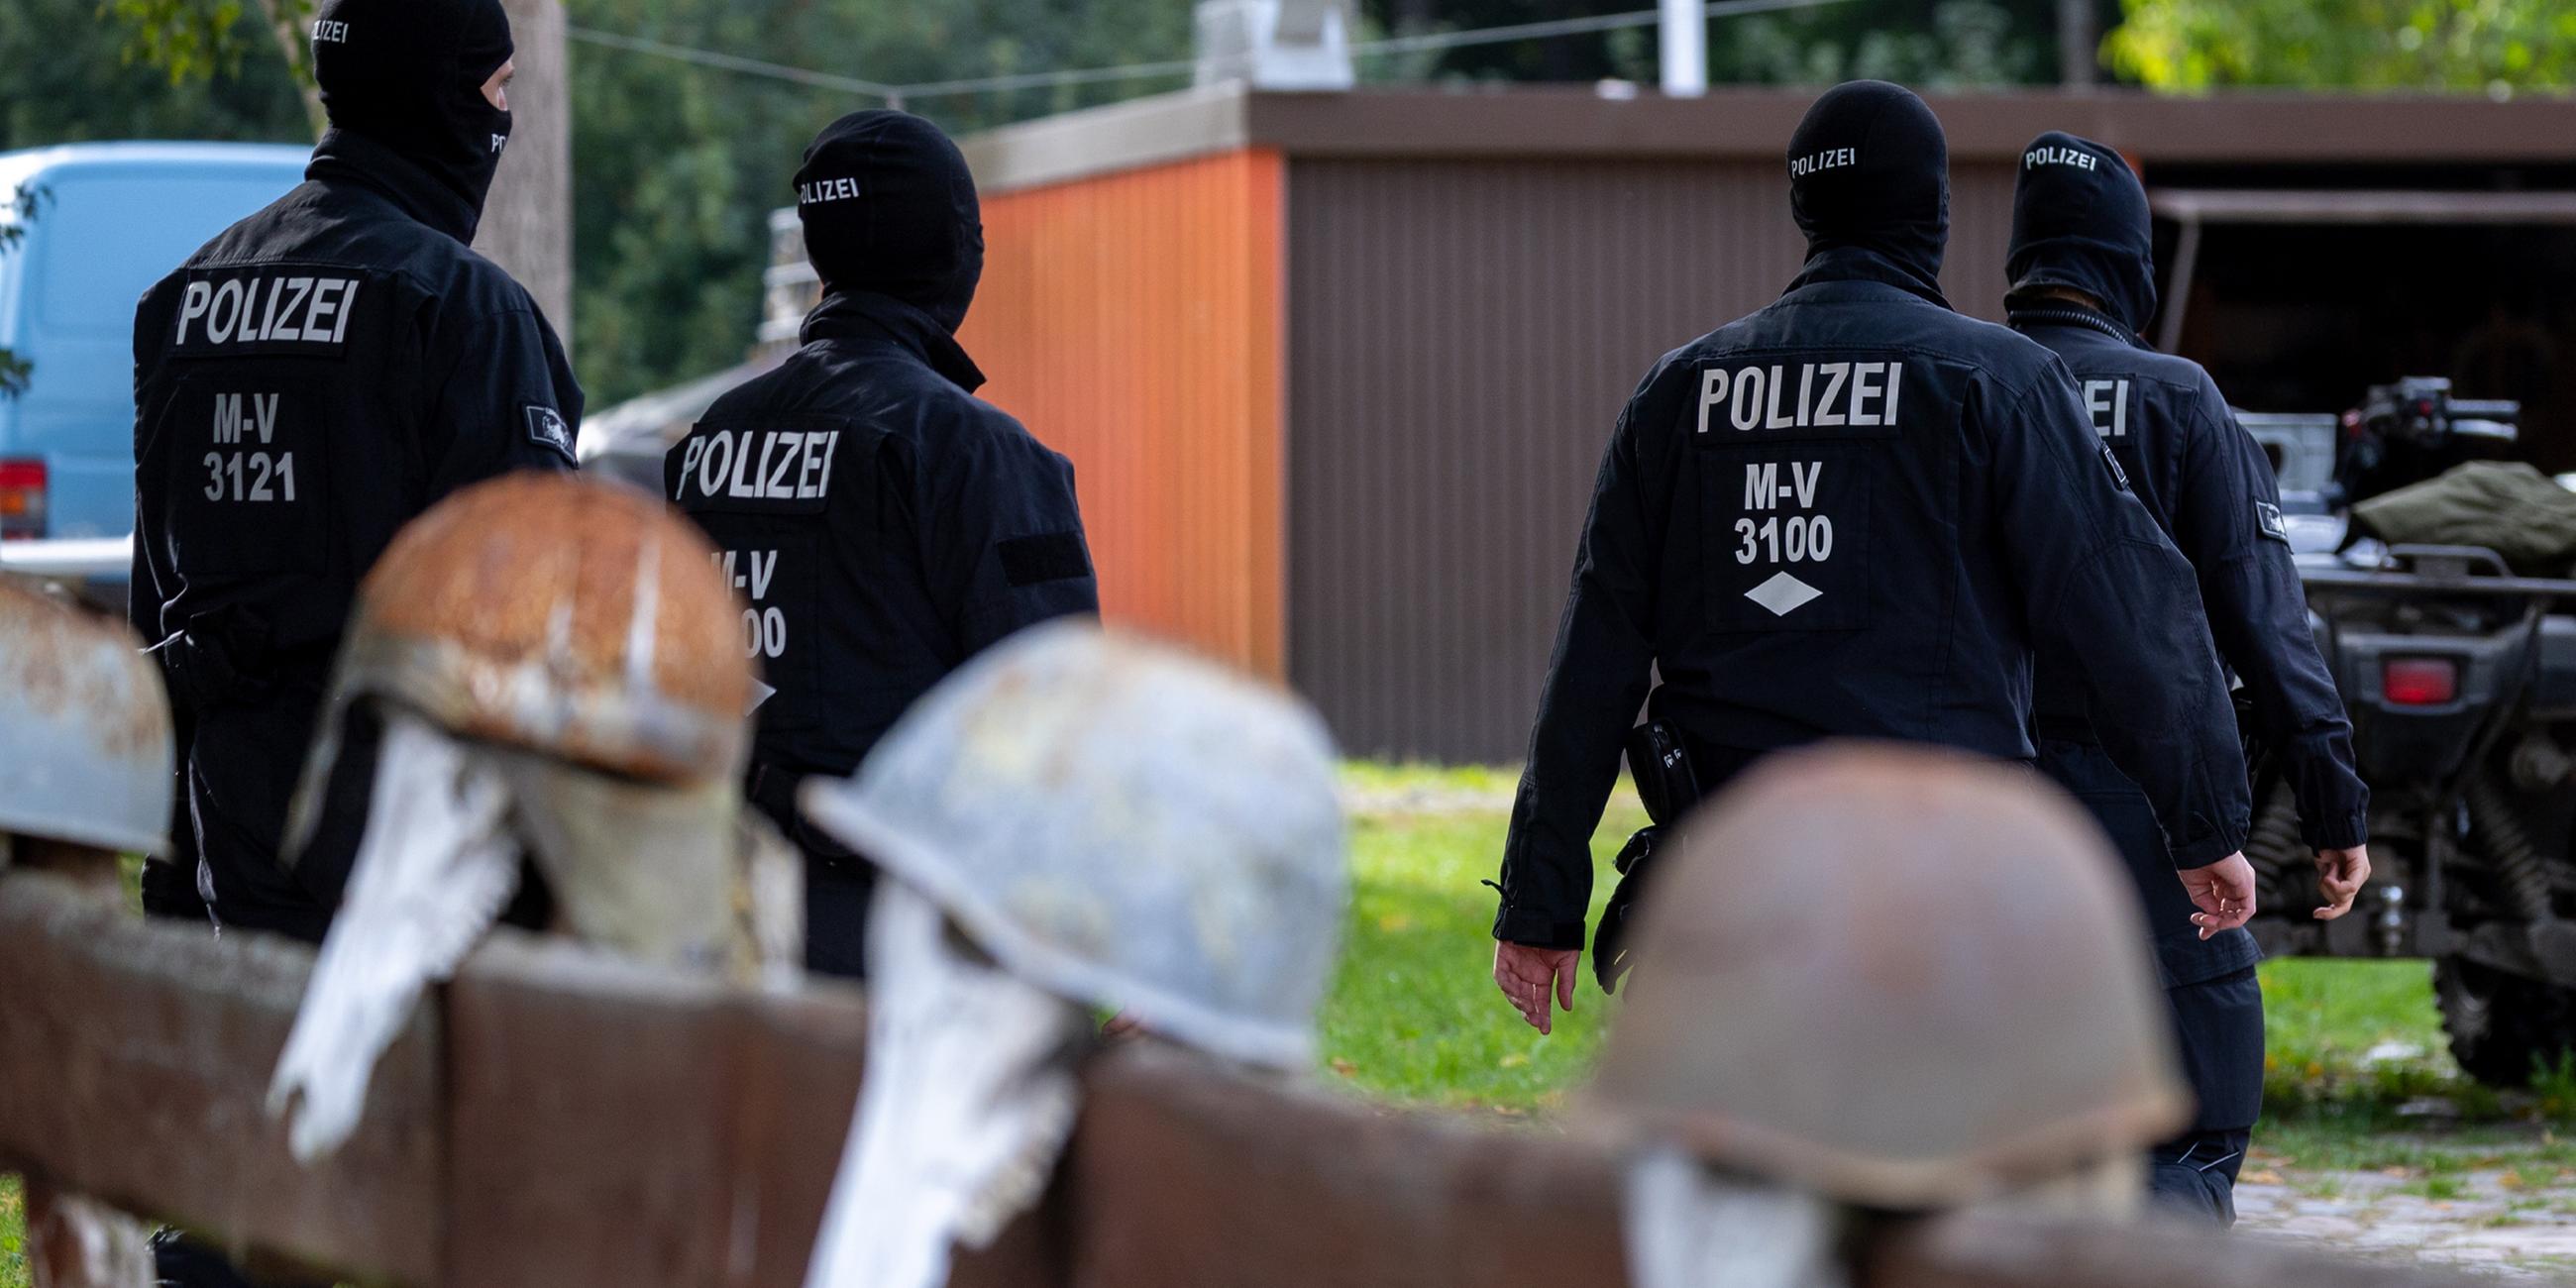 Polizisten gehen zur Sicherung von Beweismittel zum Haus des bundesweit bekannter Rechtsextremist Krüger auf dessen Gartenzaun rostige Stahlhelme hängen. (19.09.2023)